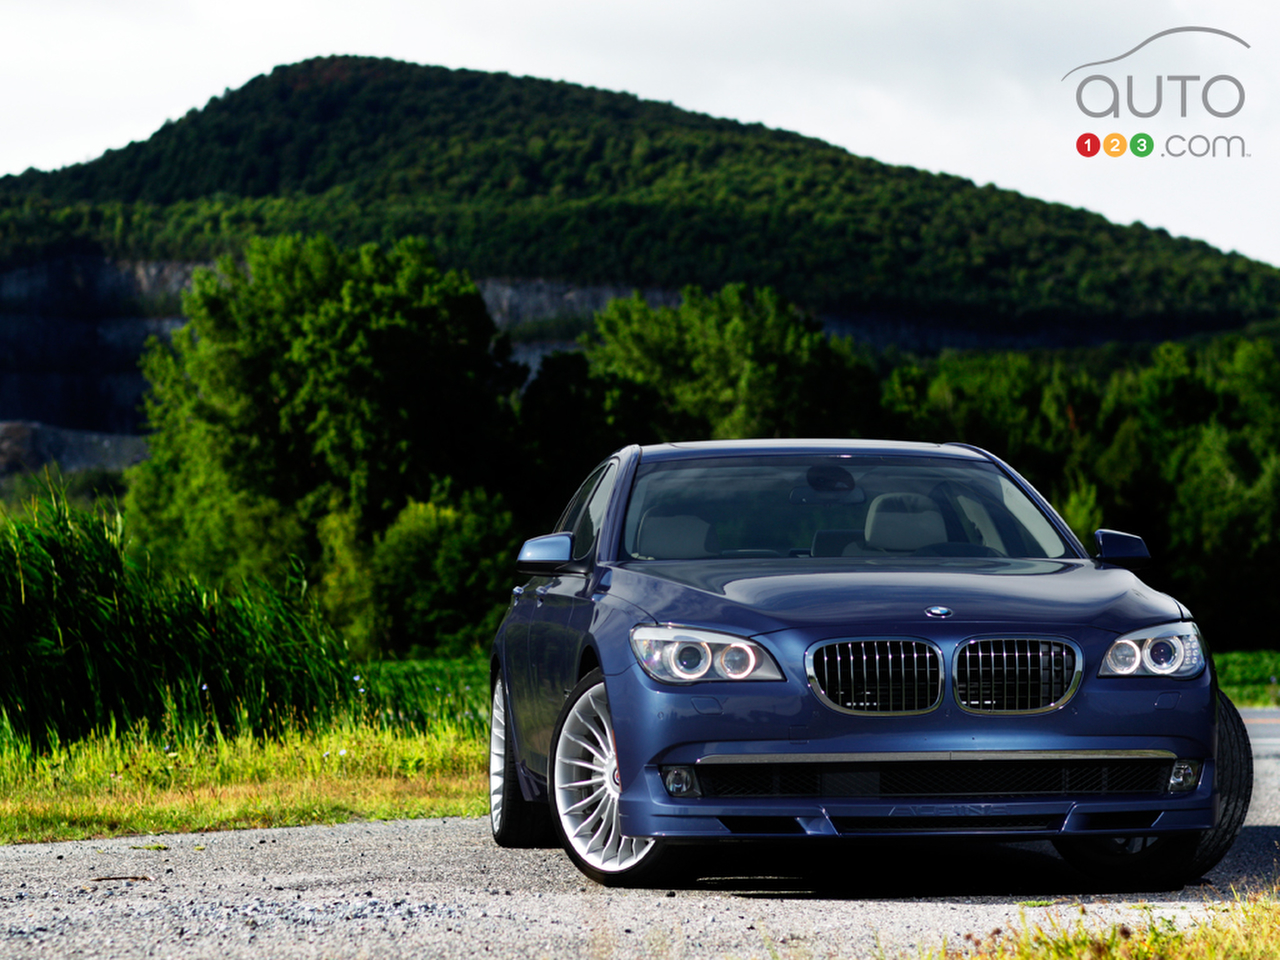 BMW Alpina B7 2011 / Flickr - Partage de photos!